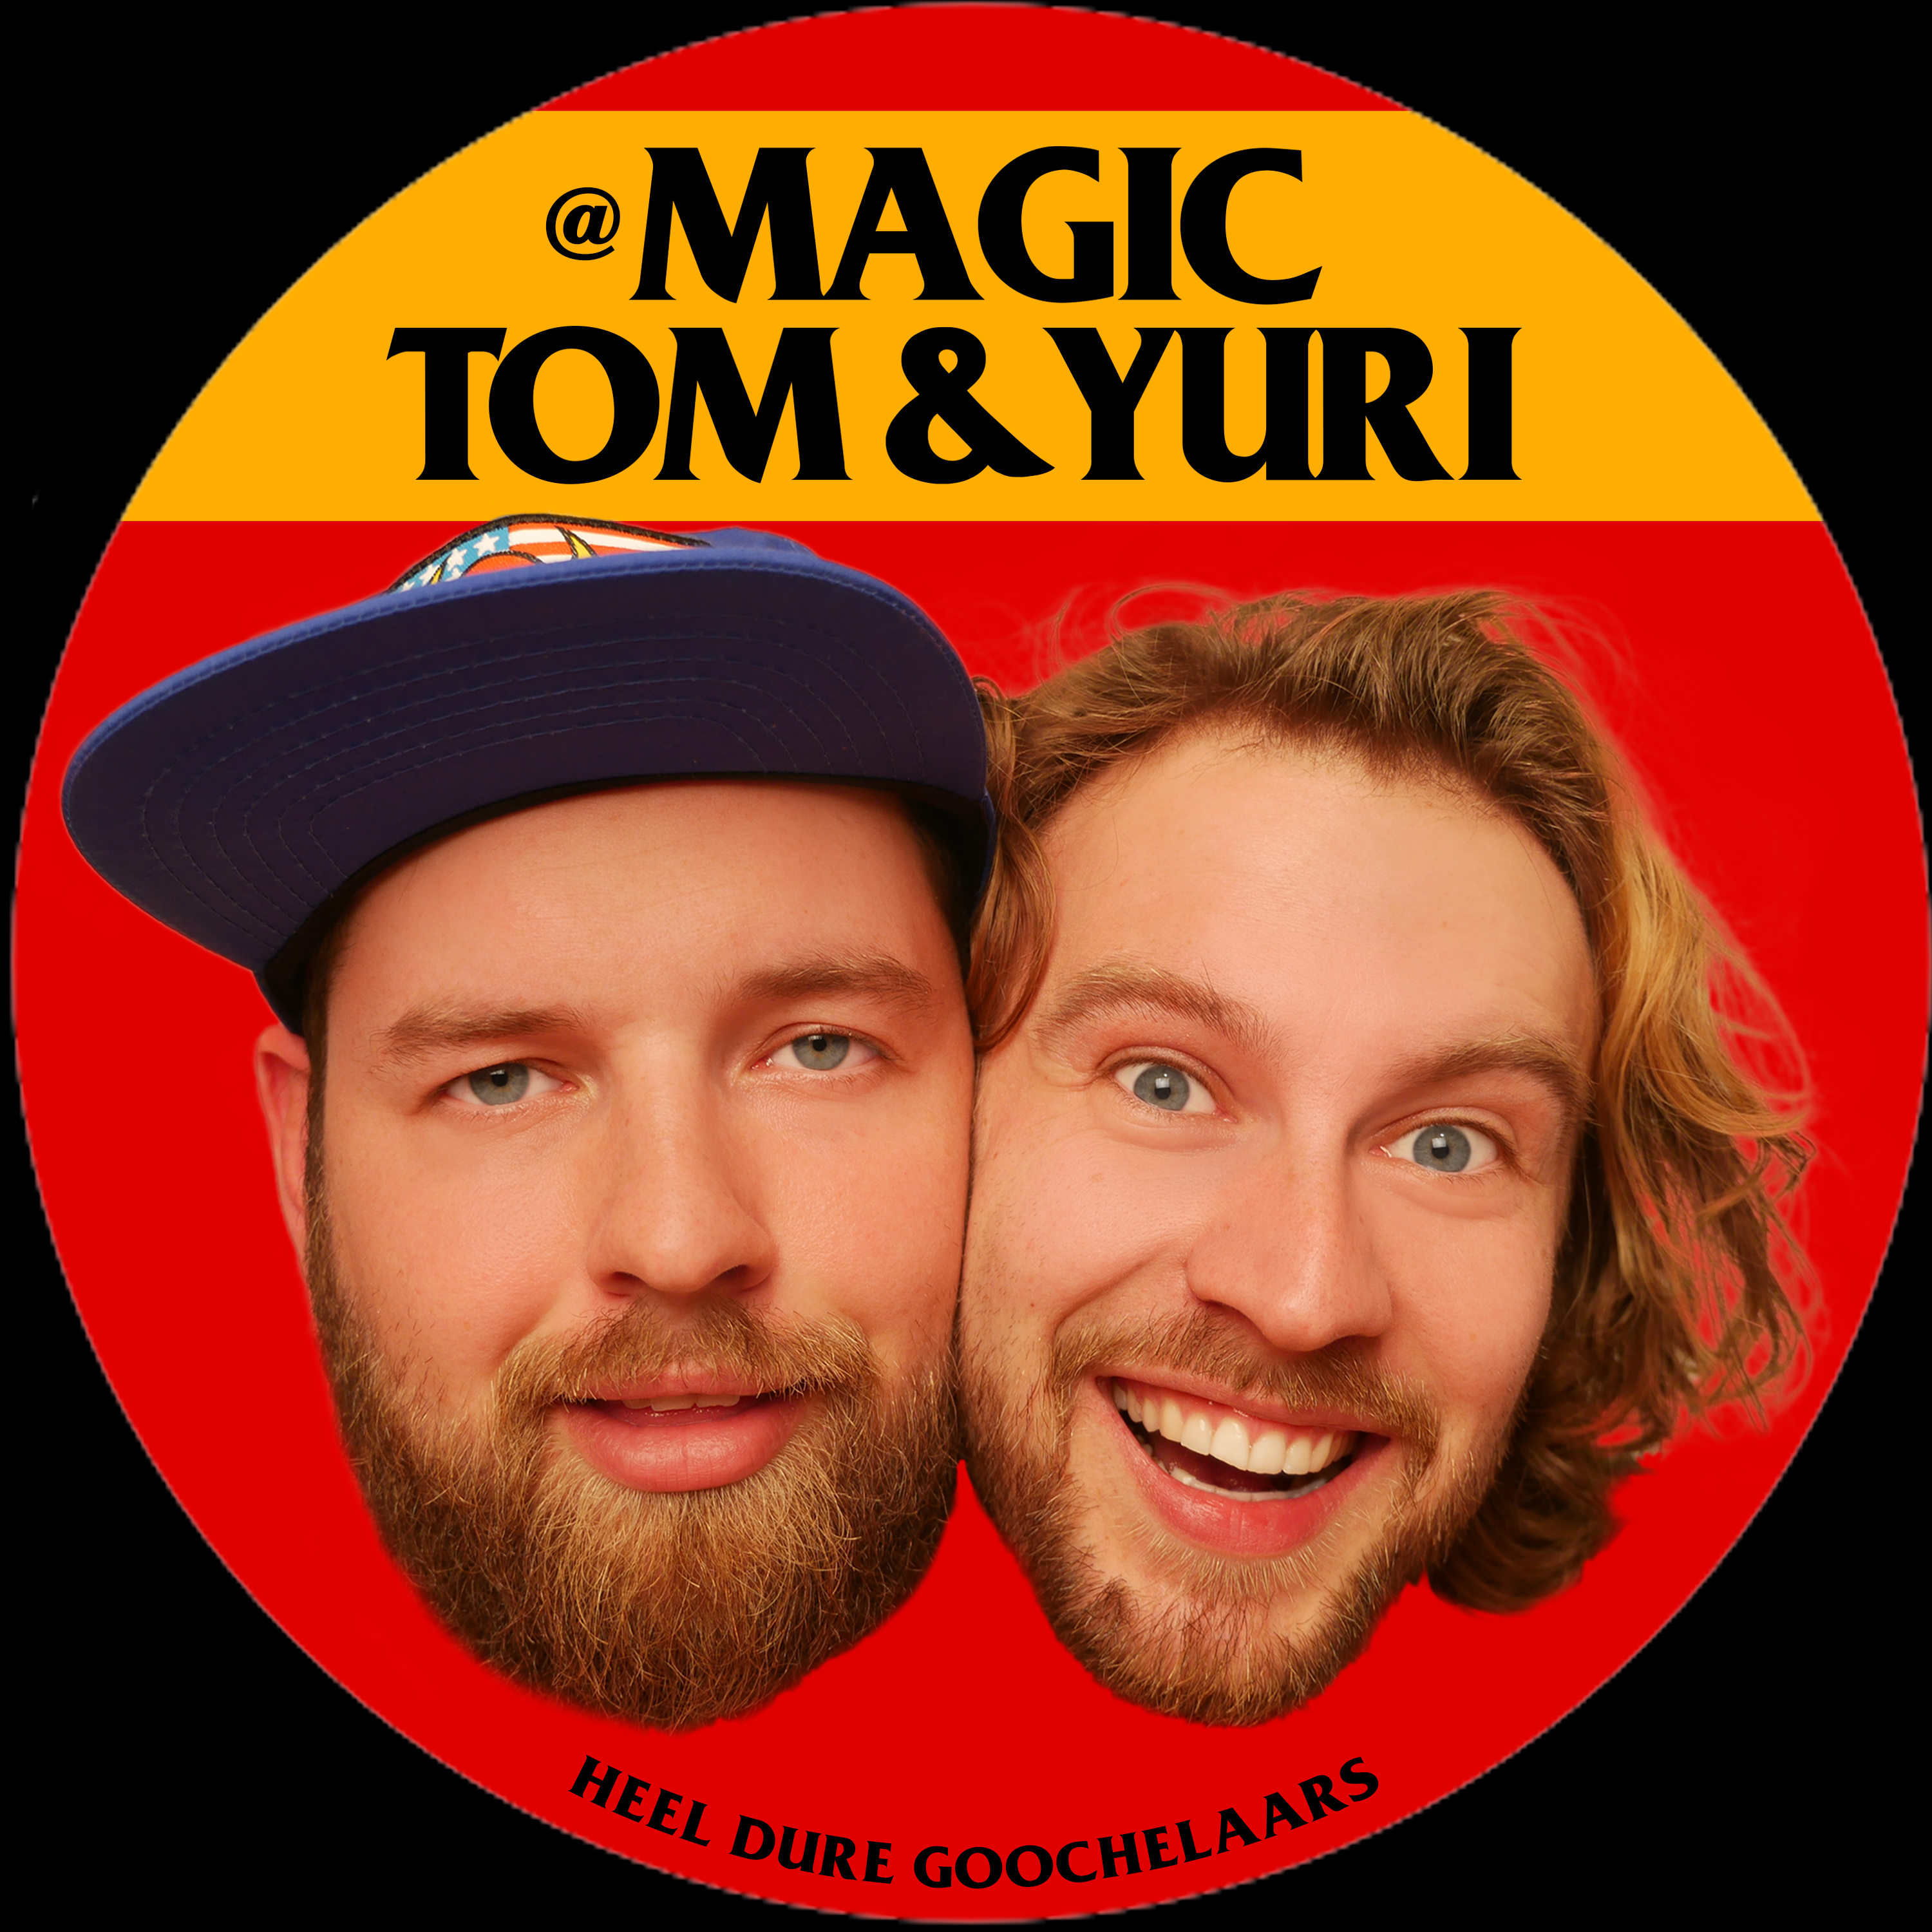 Magic Tom & Yuri